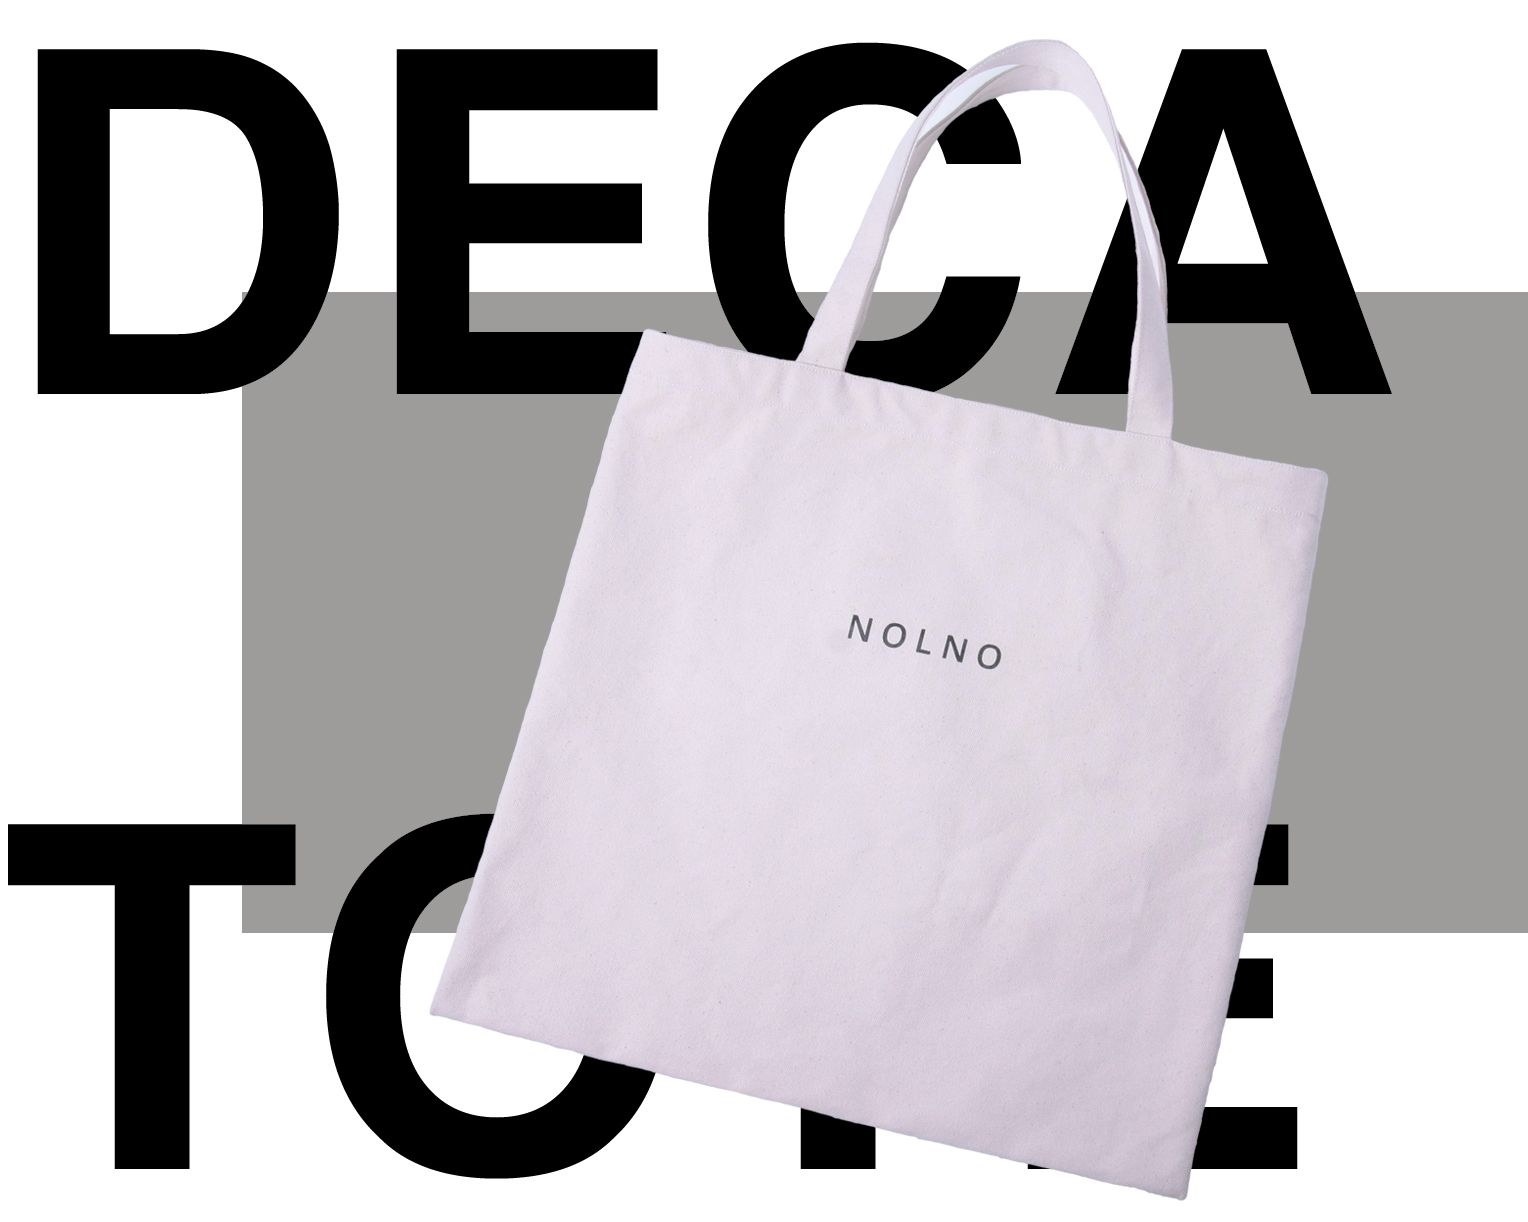 ユニセックスファッション「NOLNO」公式オンラインサイト